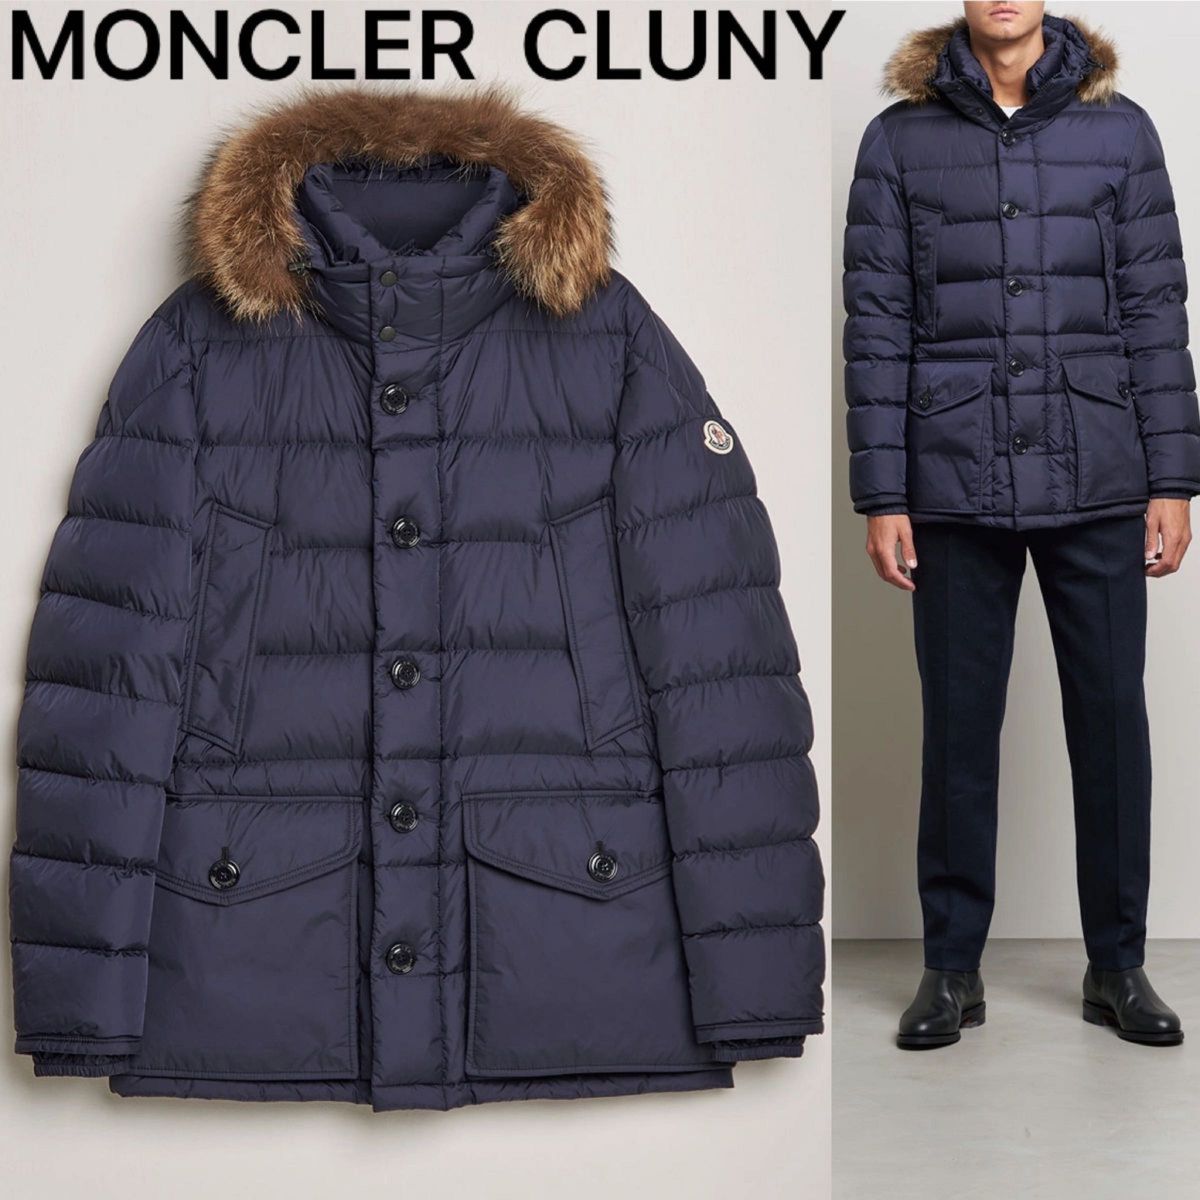 【美品】MONCLER モンクレール ダウンジャケット ダウンコート CLUNY クルーニー リアルファー サイズ0 濃紺